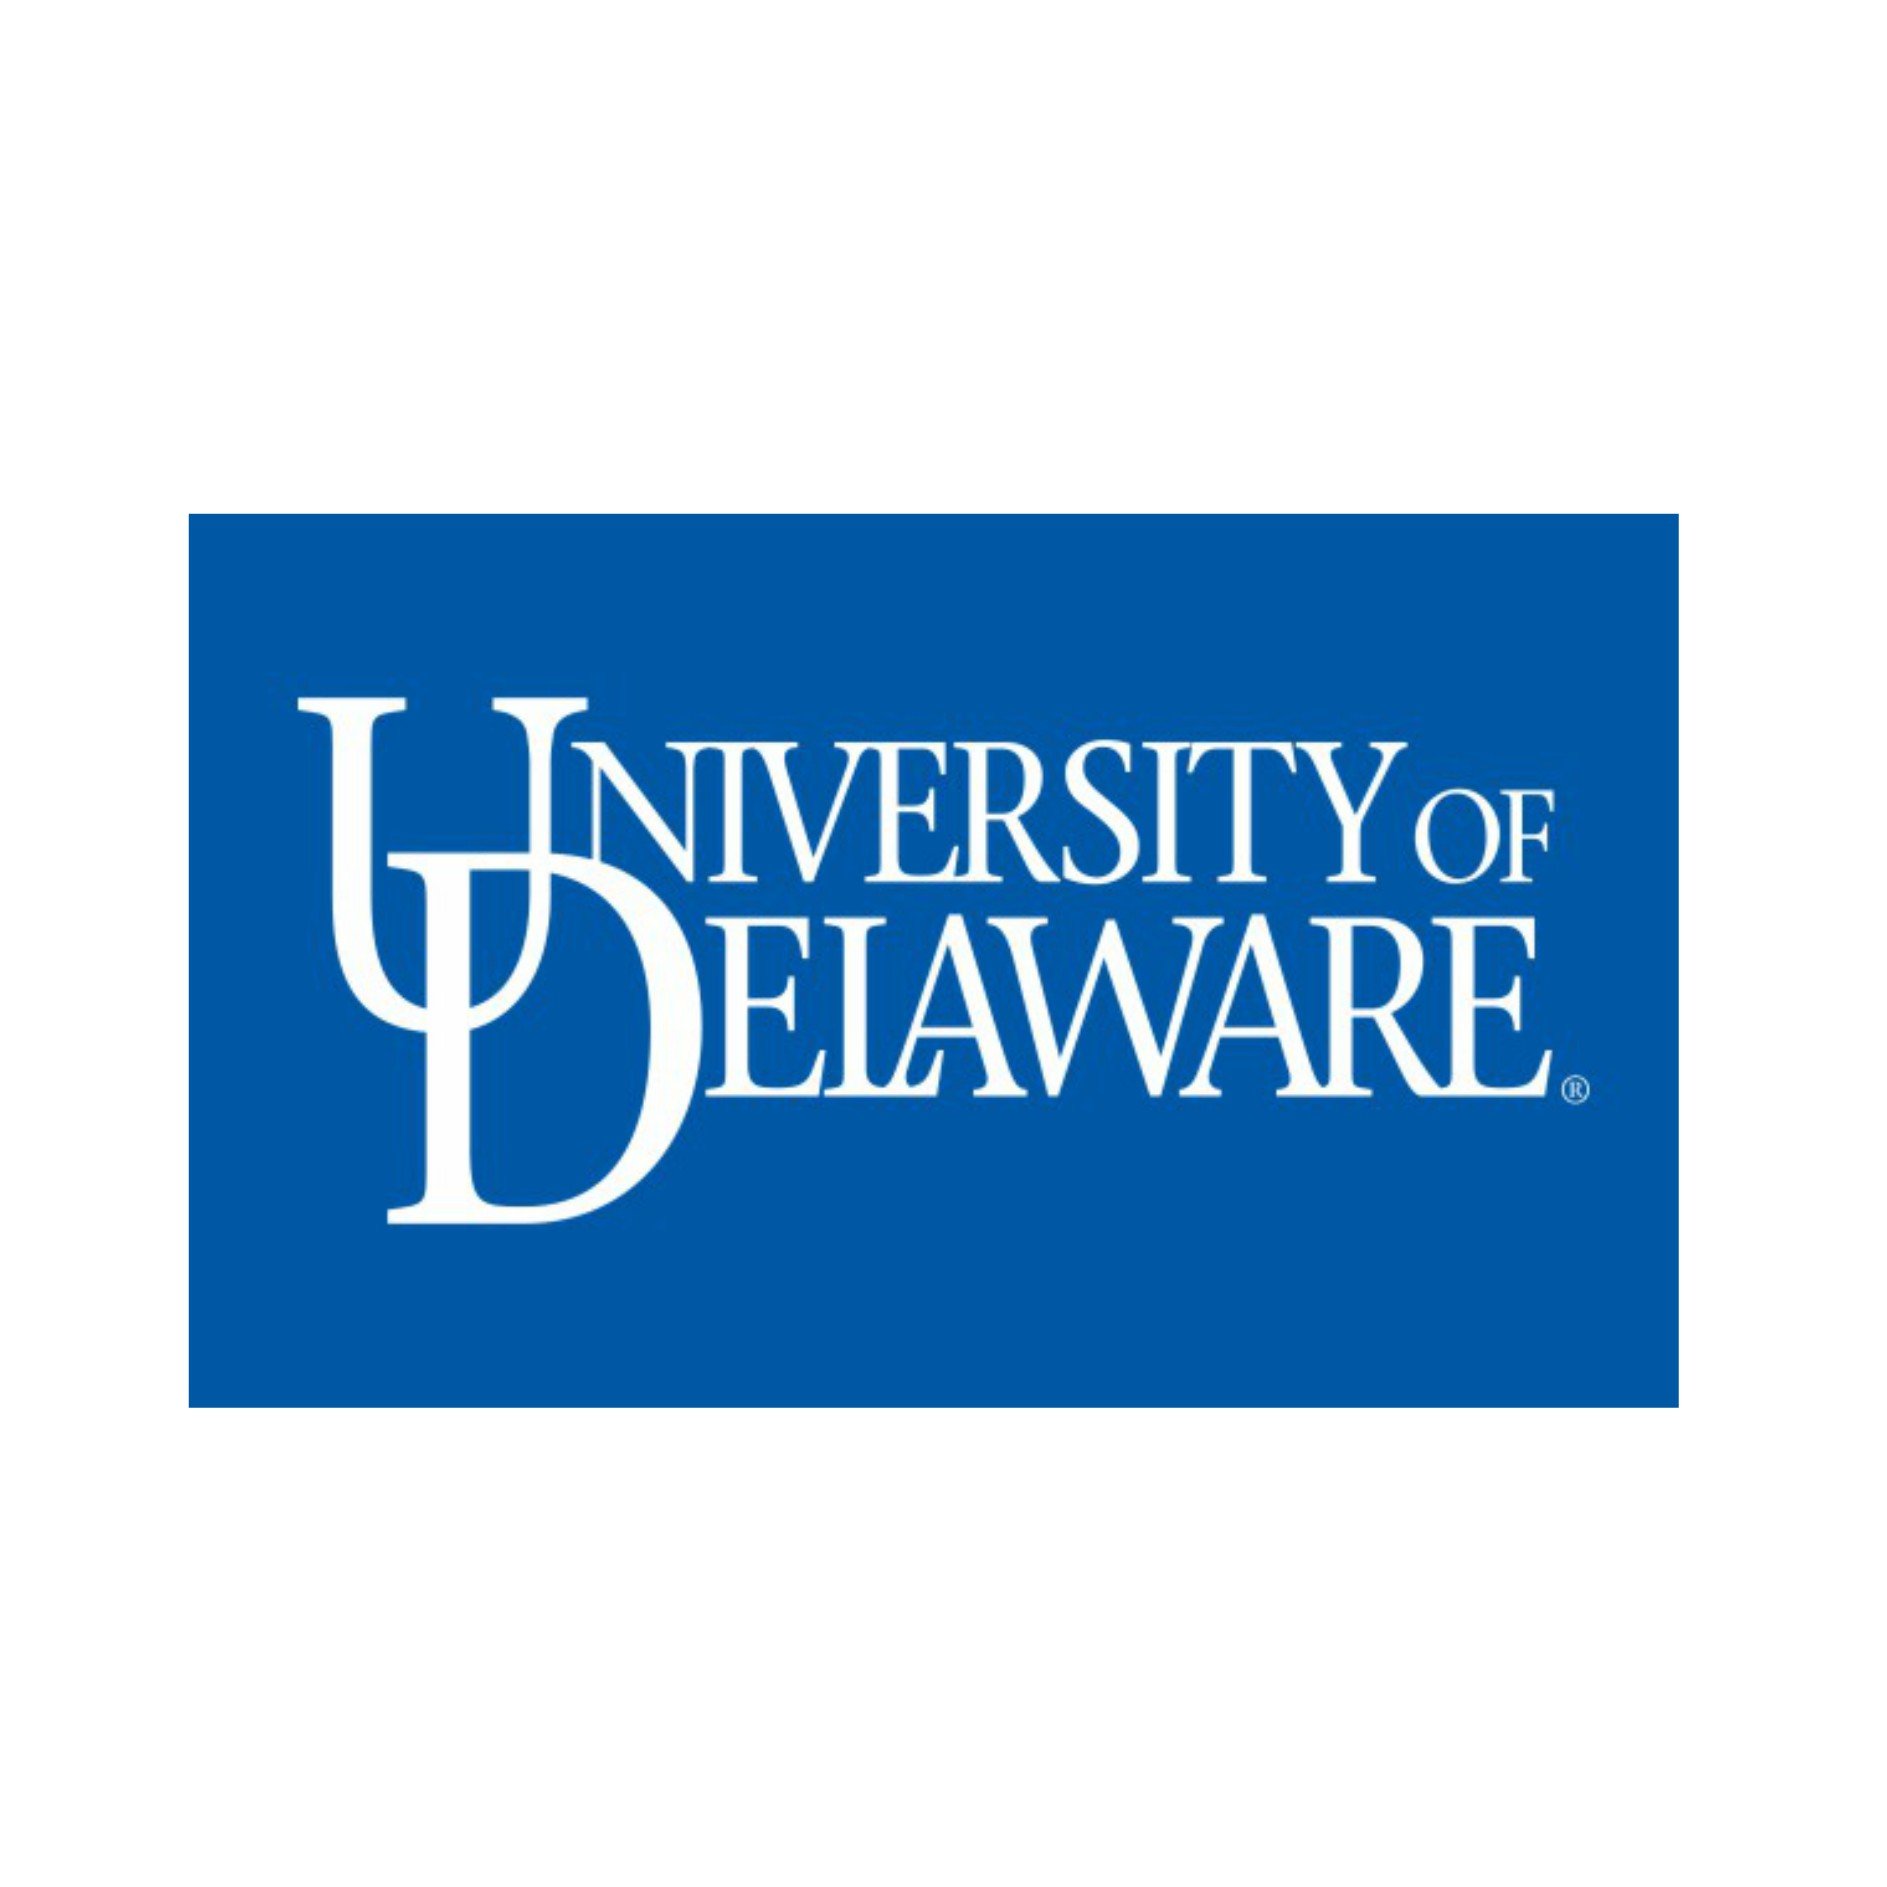 University-of-Delaware-Word-Mark-Flag-Royal.jpeg